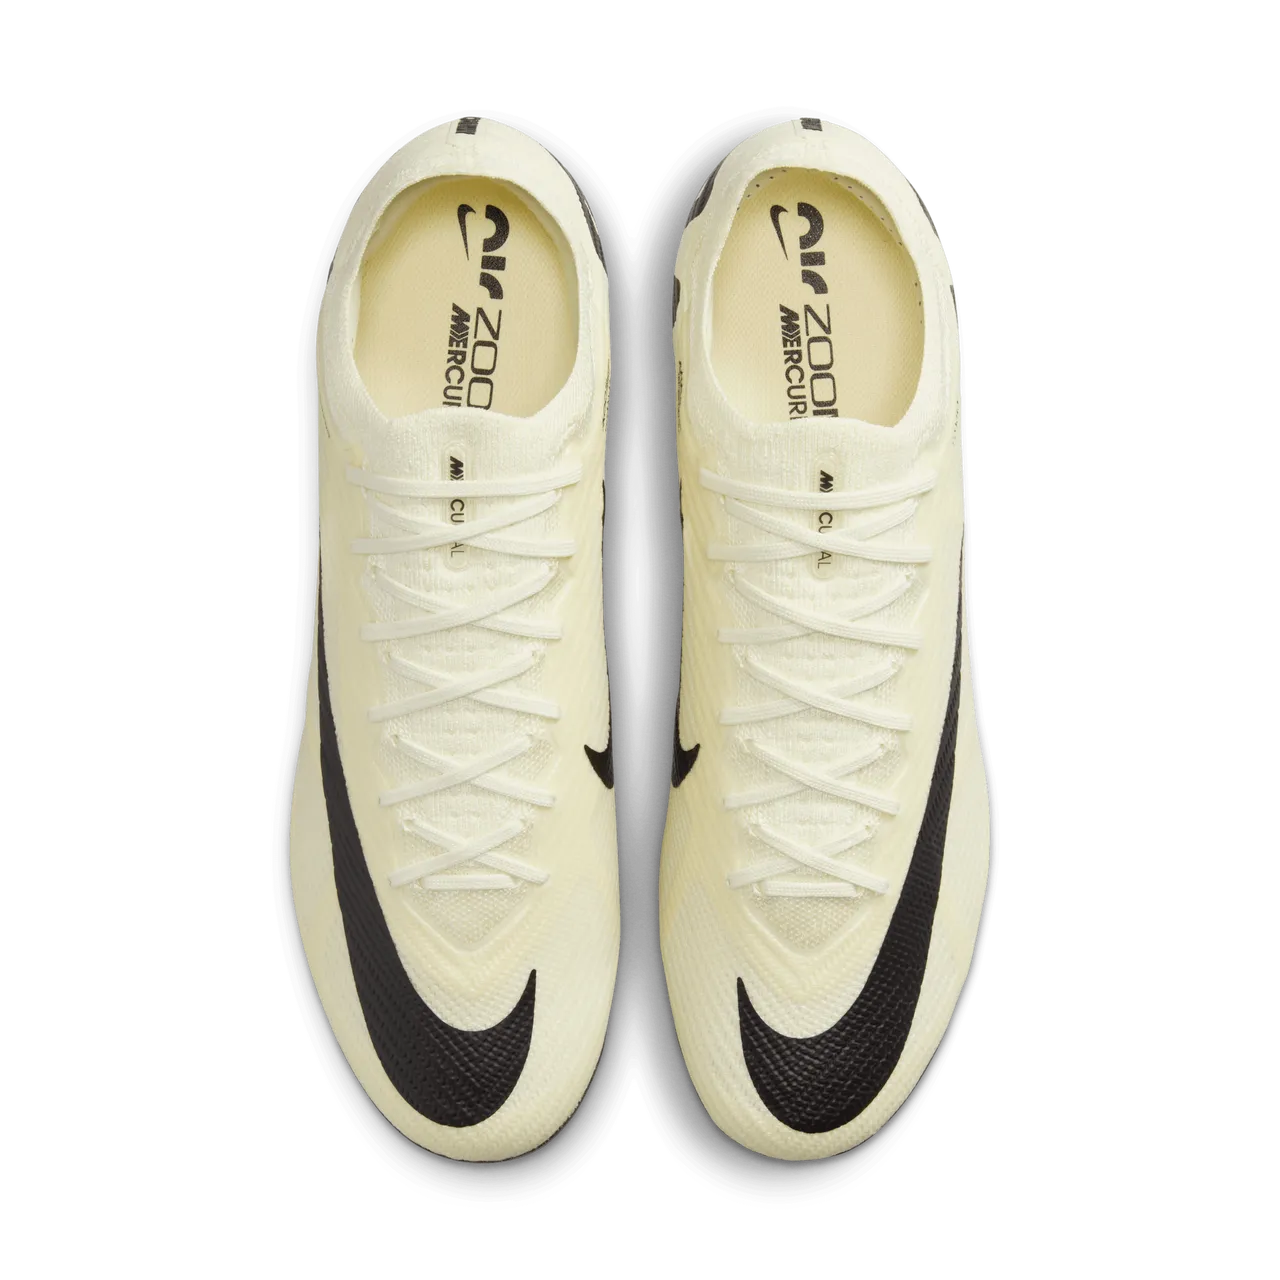 Nike Mercurial Vapor 15 Elite low top voetbalschoenen (stevige ondergrond) - Geel